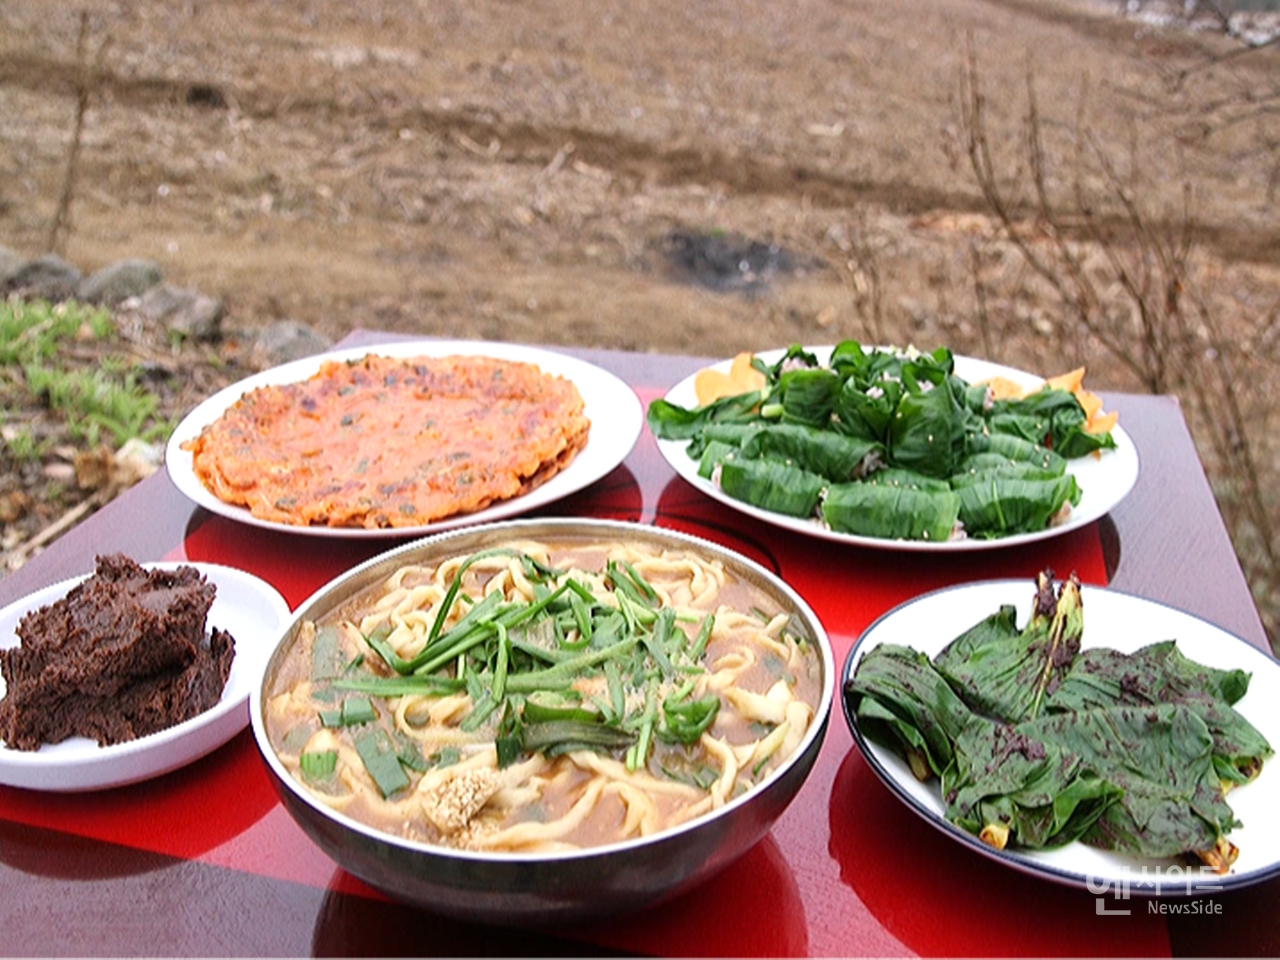 한국인의 밥상, 강원 홍천의 겨릿소와 장칼국수 (사진이미지기사와관련없음)